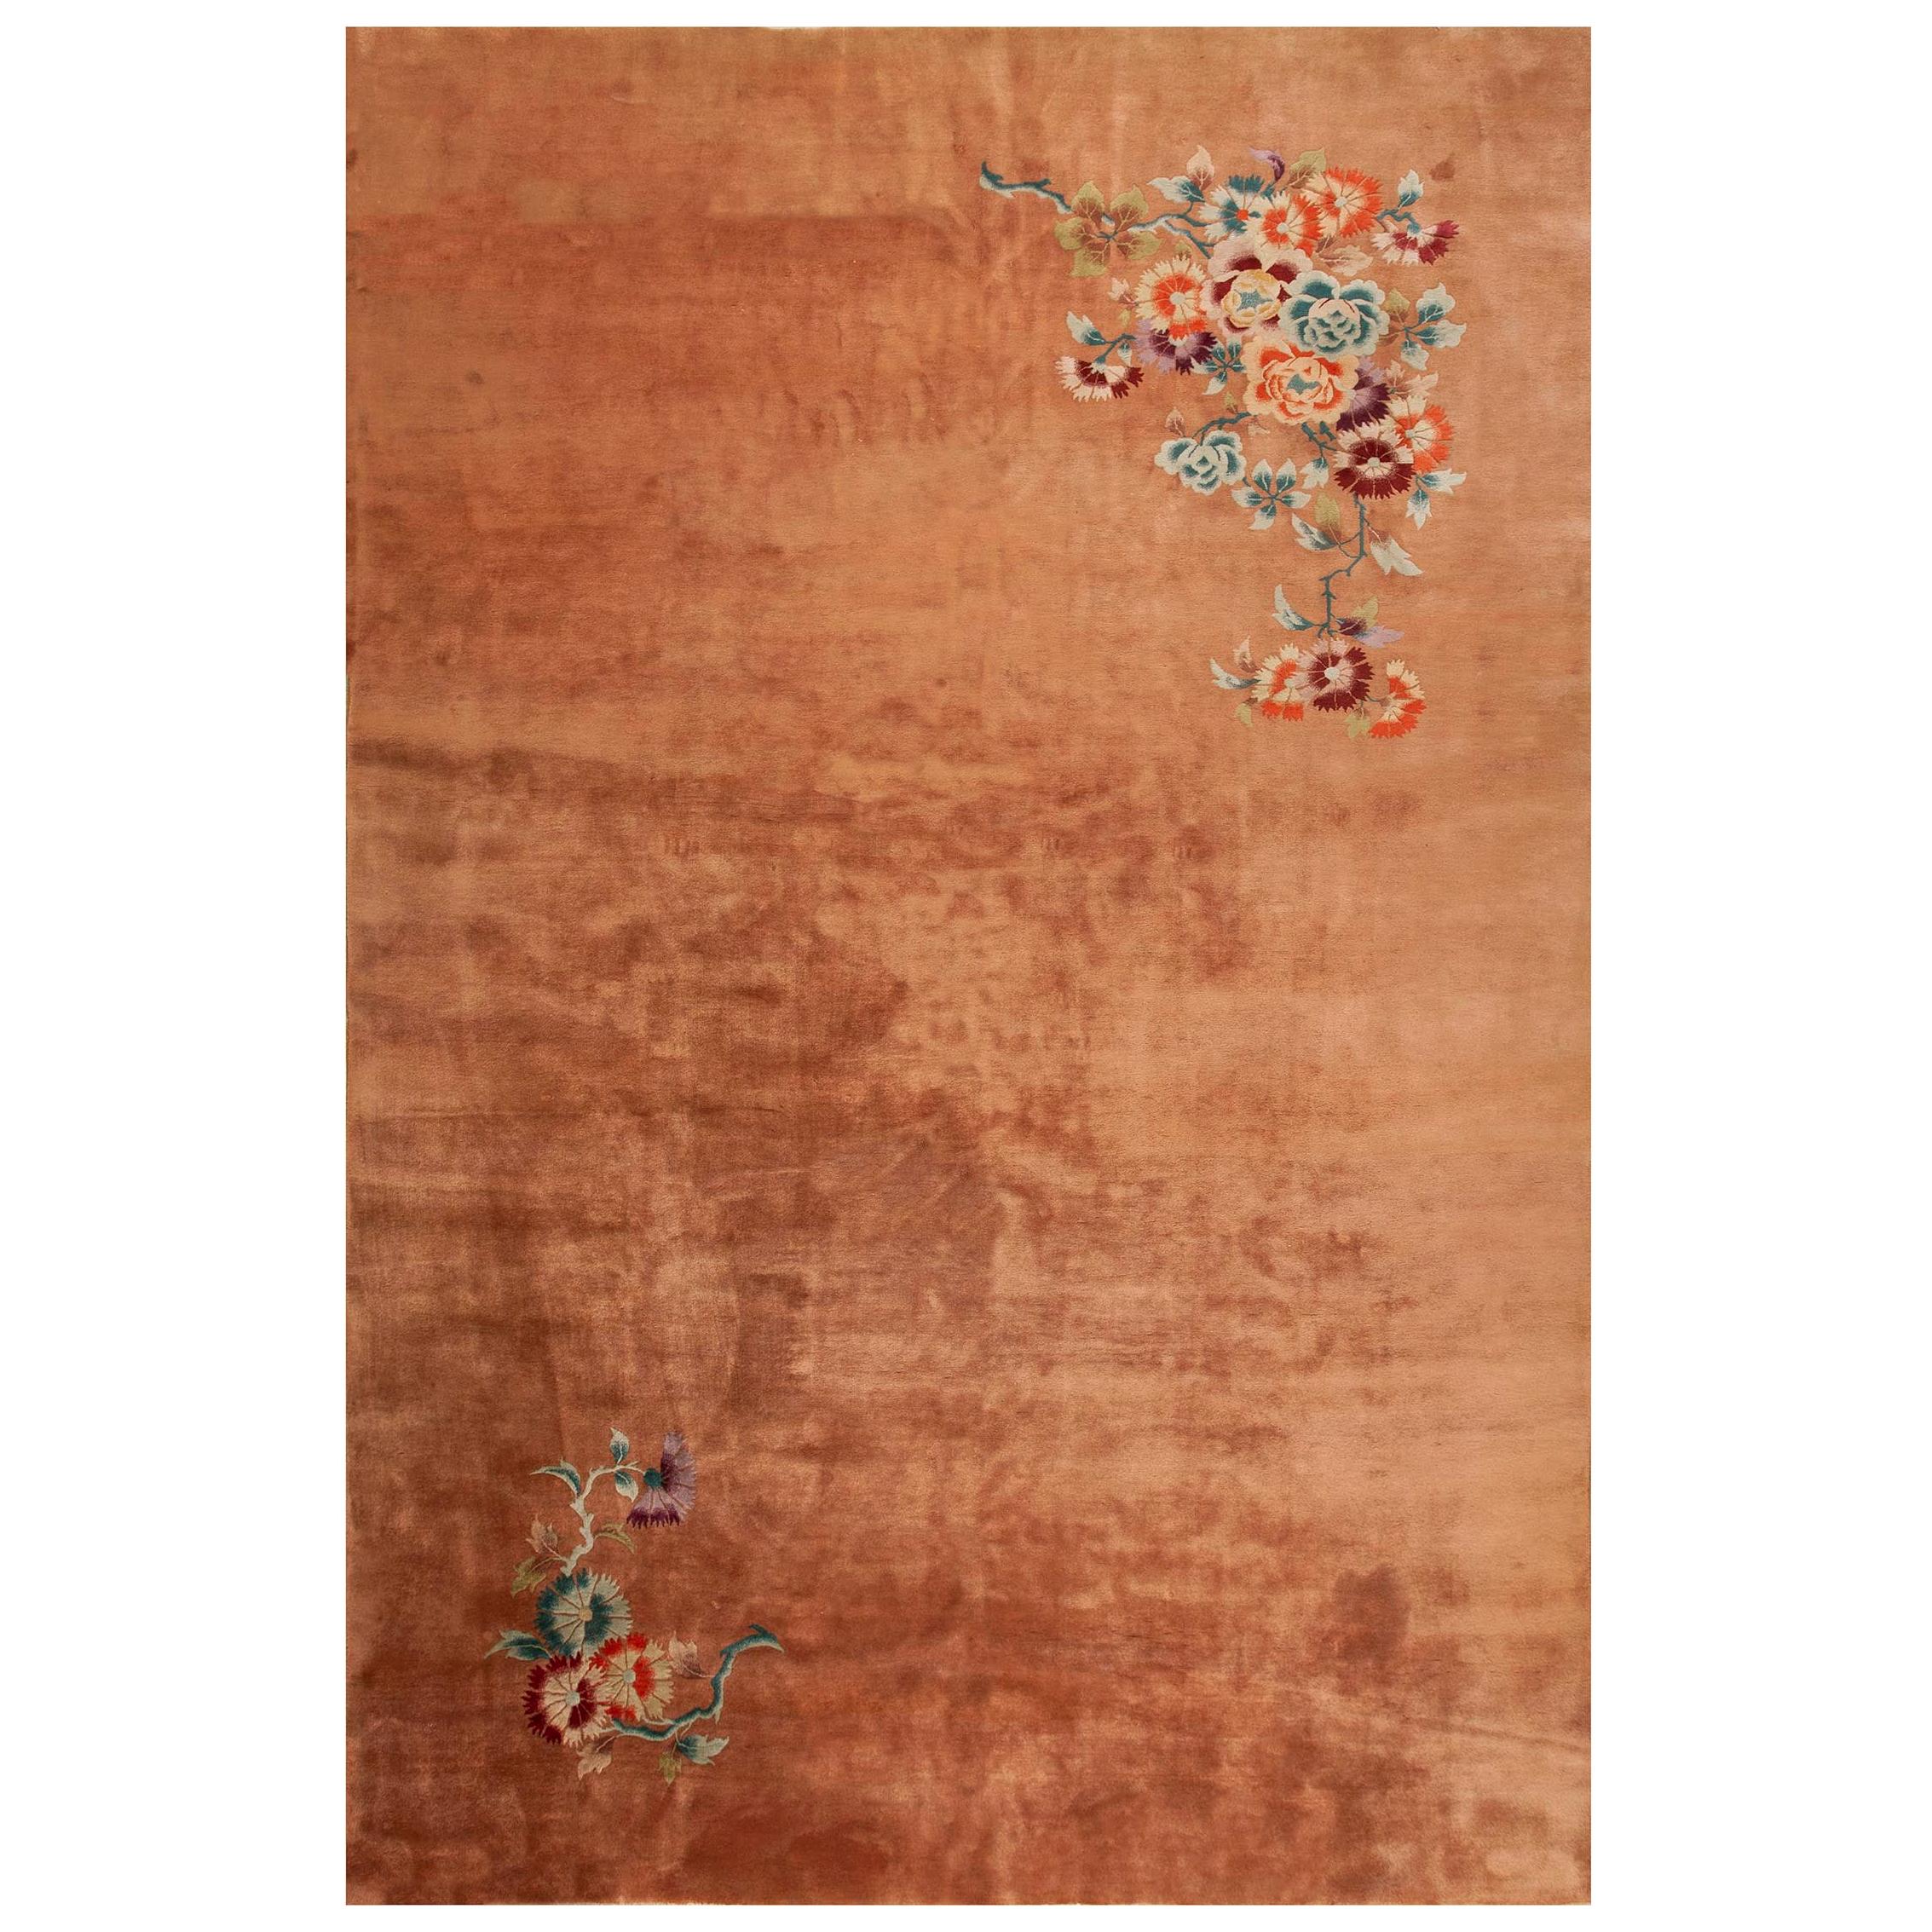 Chinesischer Art-déco-Teppich aus den 1930er Jahren ( 9''9 x 15'' - 297 x 457)